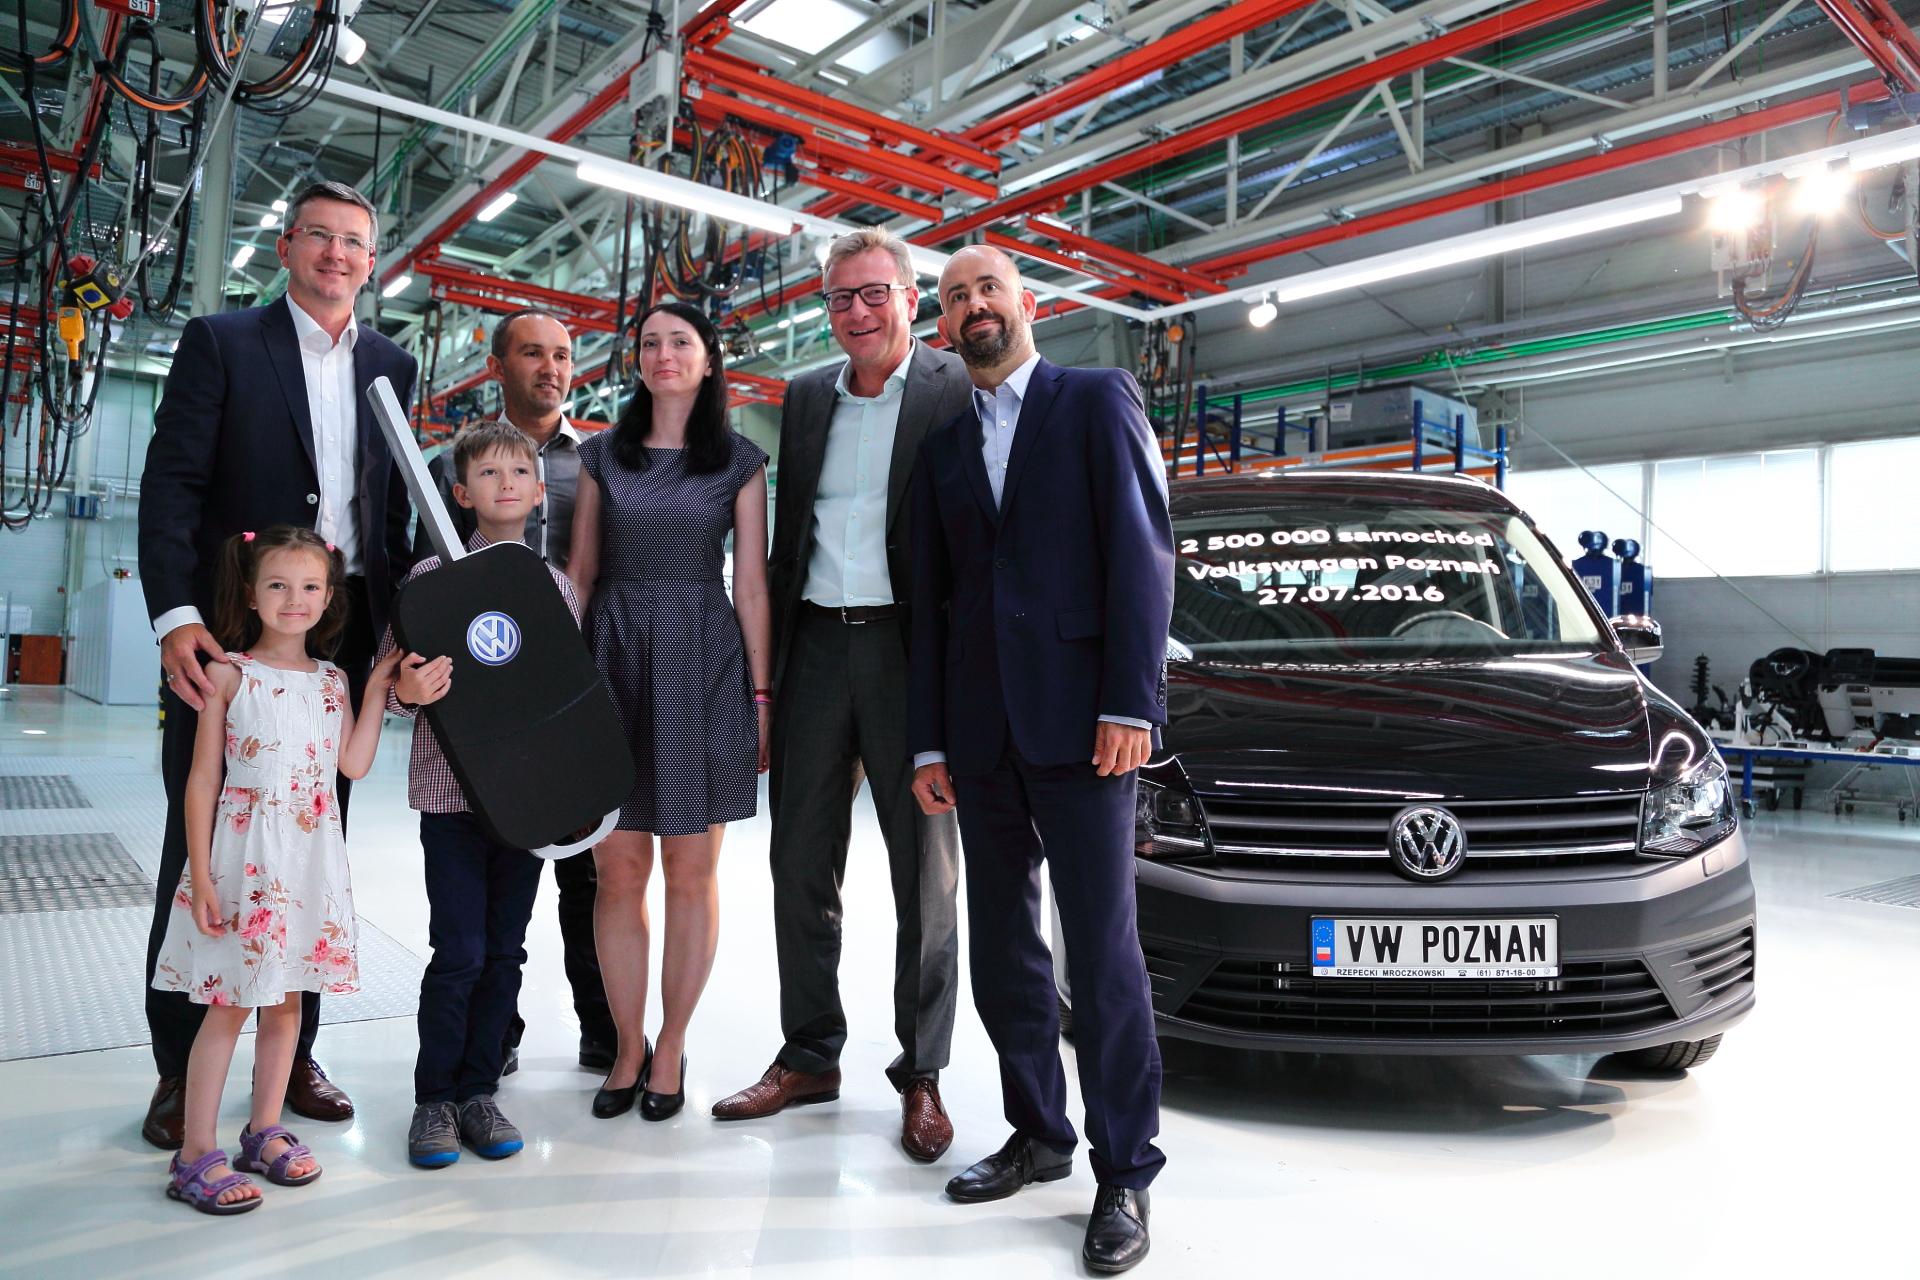 2 500 000 samochodów z Fabryki Volkswagen Poznań  – zdjęcie 3